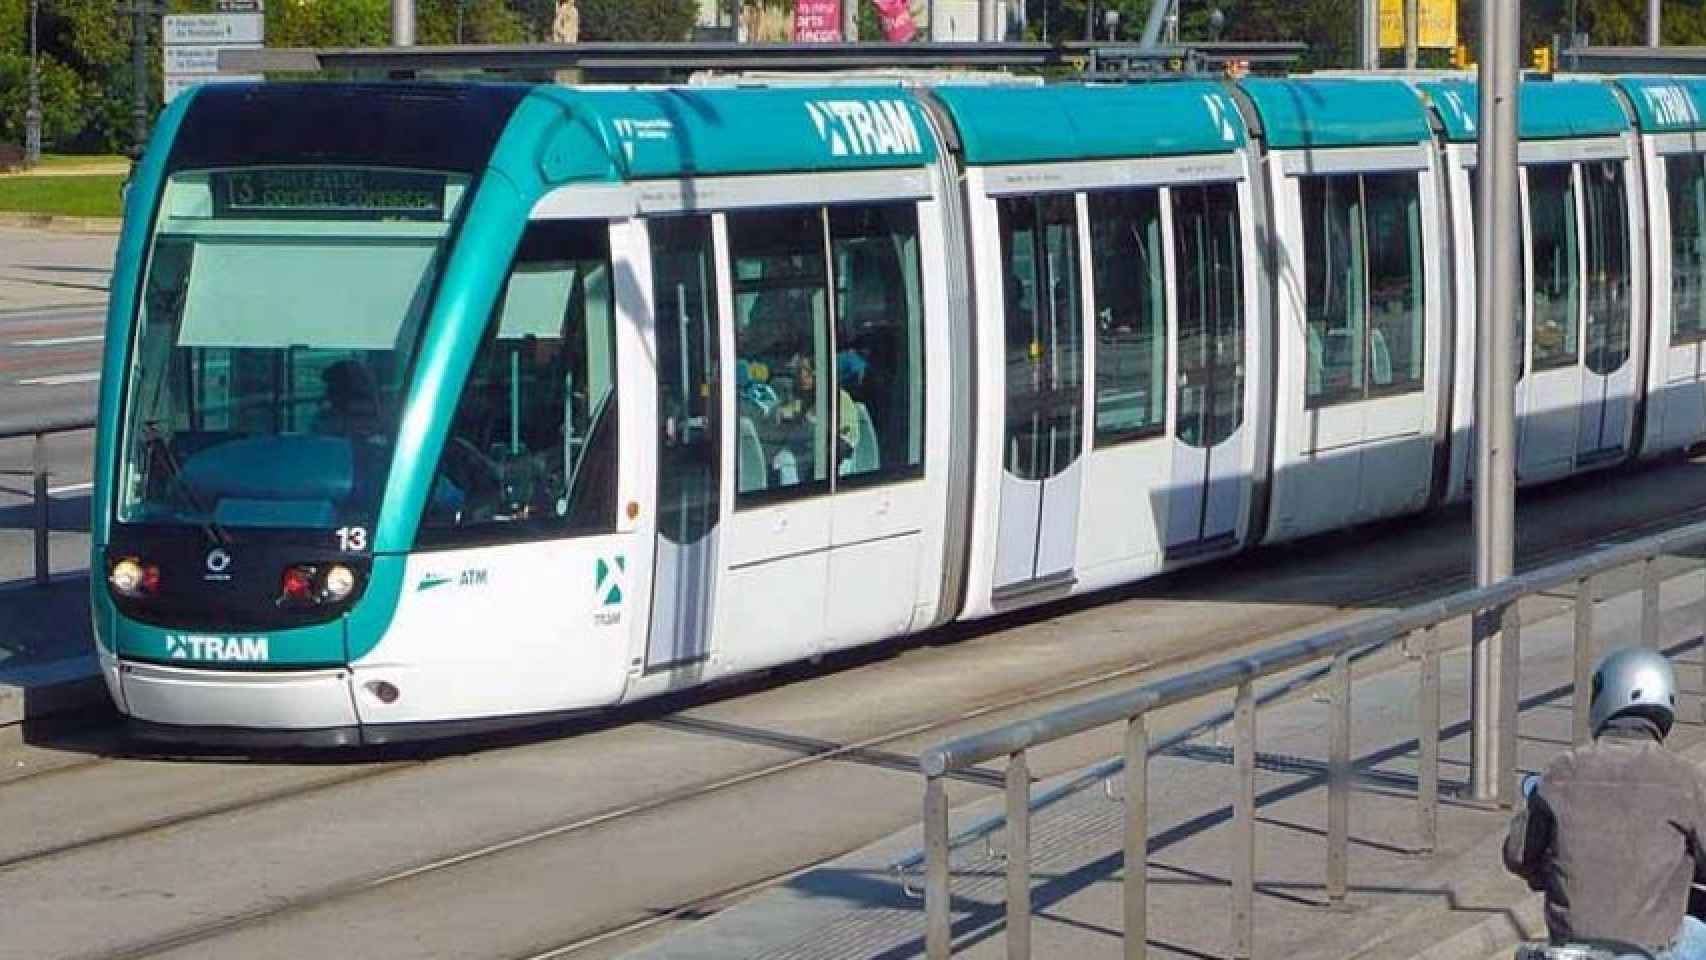 El tranvía de Barcelona (tram) en la avenida Diagonal